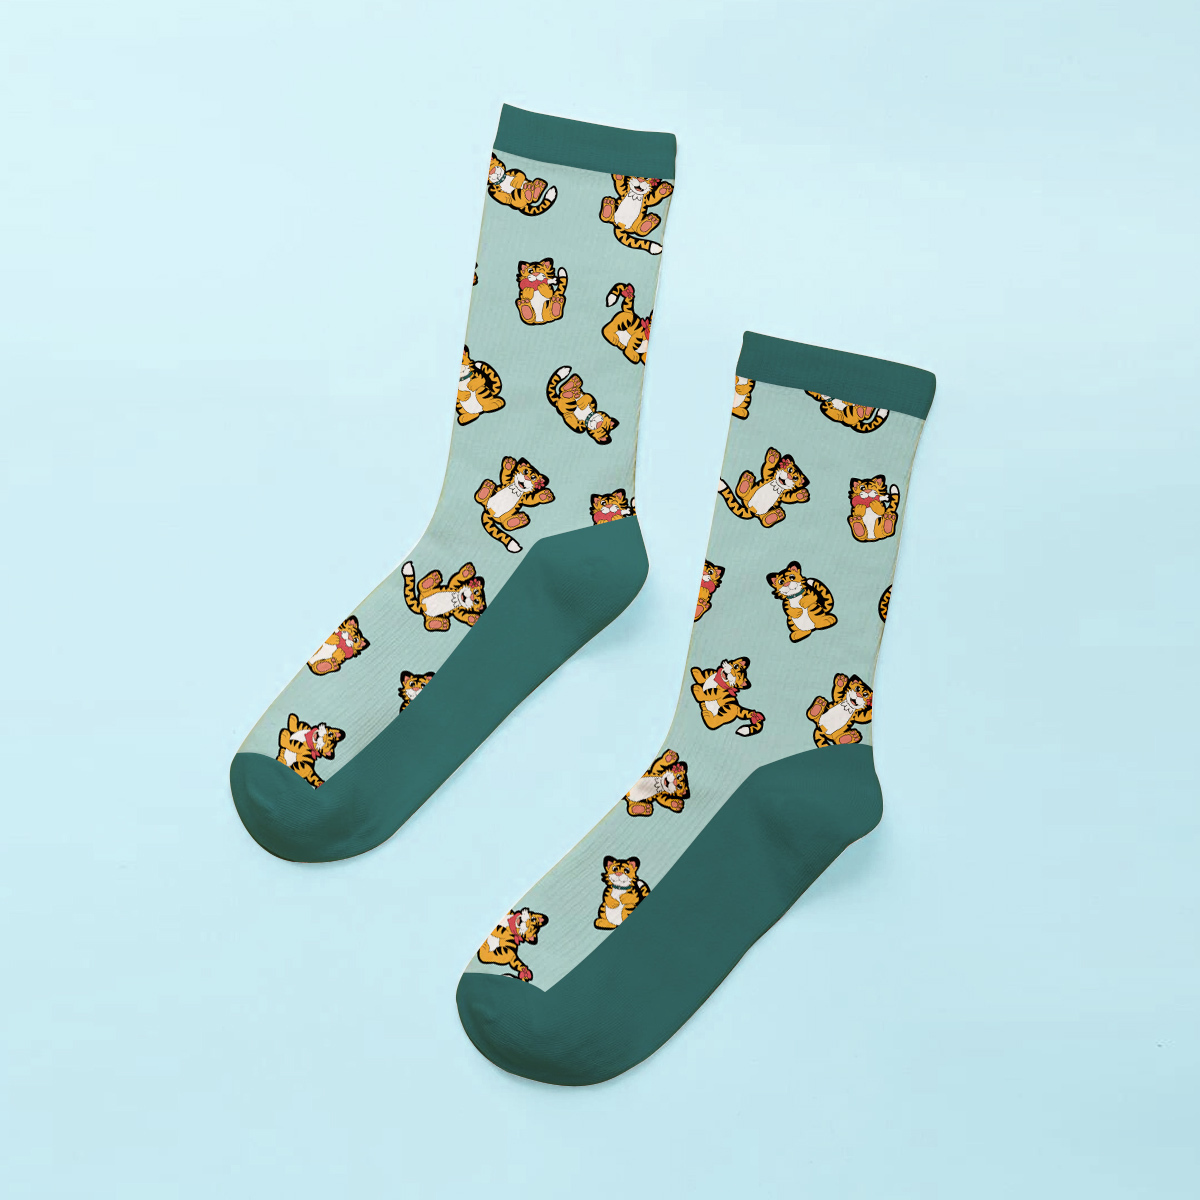 Customised Socks